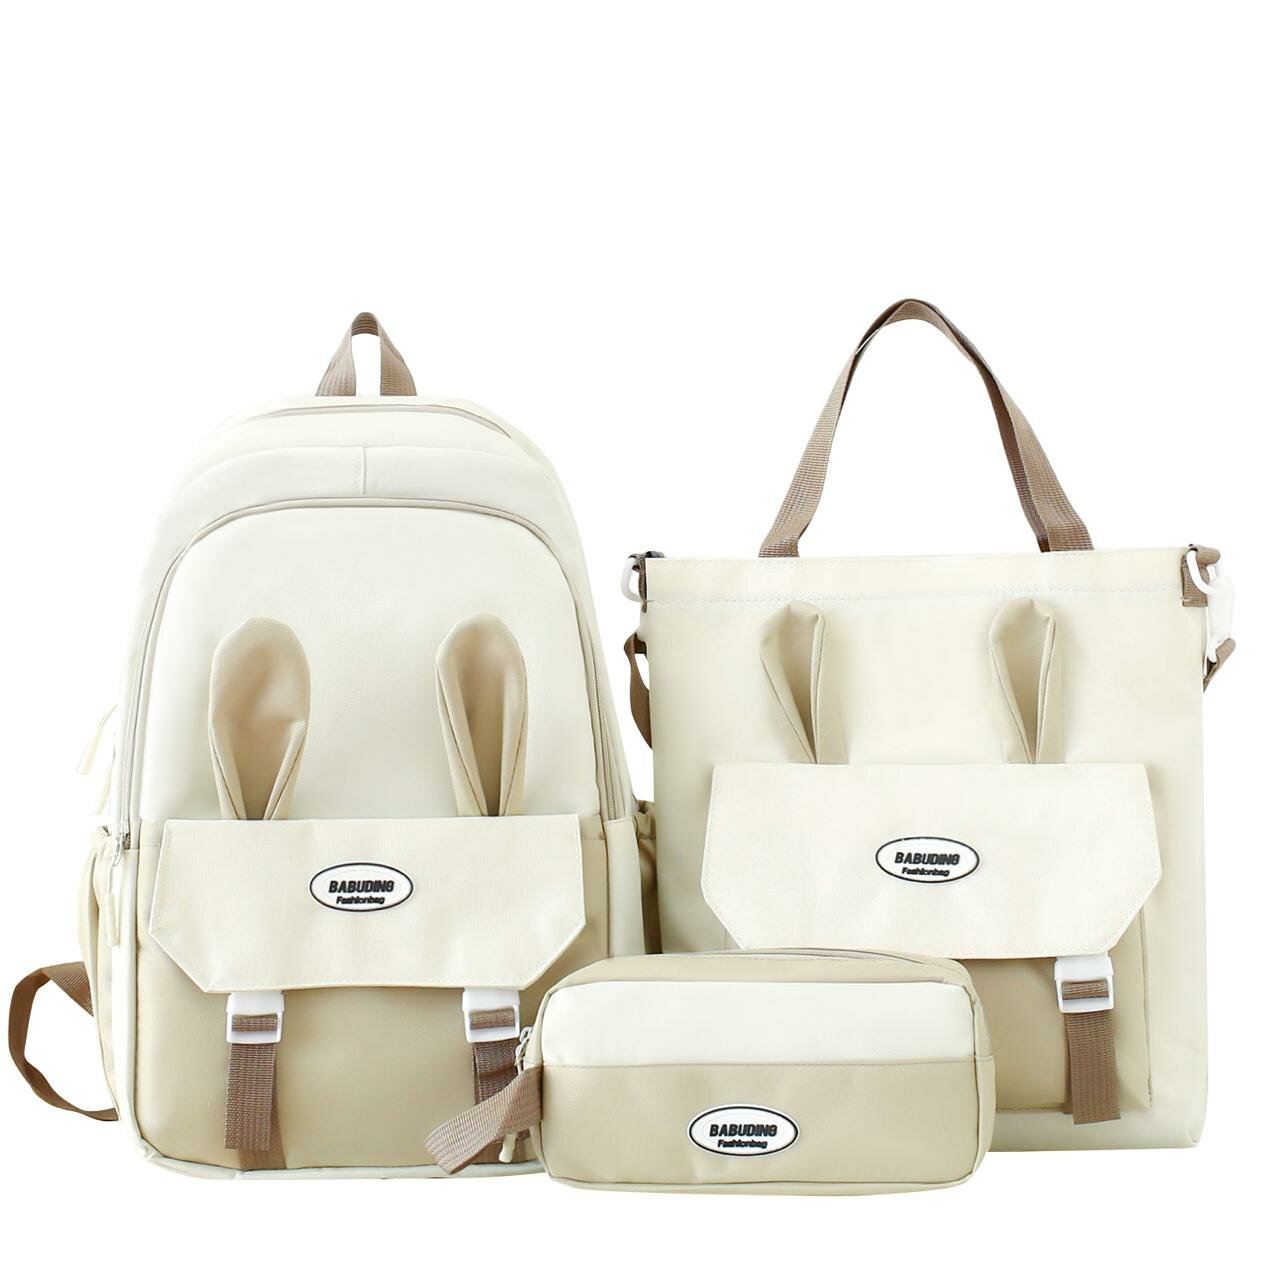 Рюкзак для девочки с комплектом 3в1 детский пенал, сумки, рюкзак для подростков девочек и для прогулки школьный набор уши-кролика4